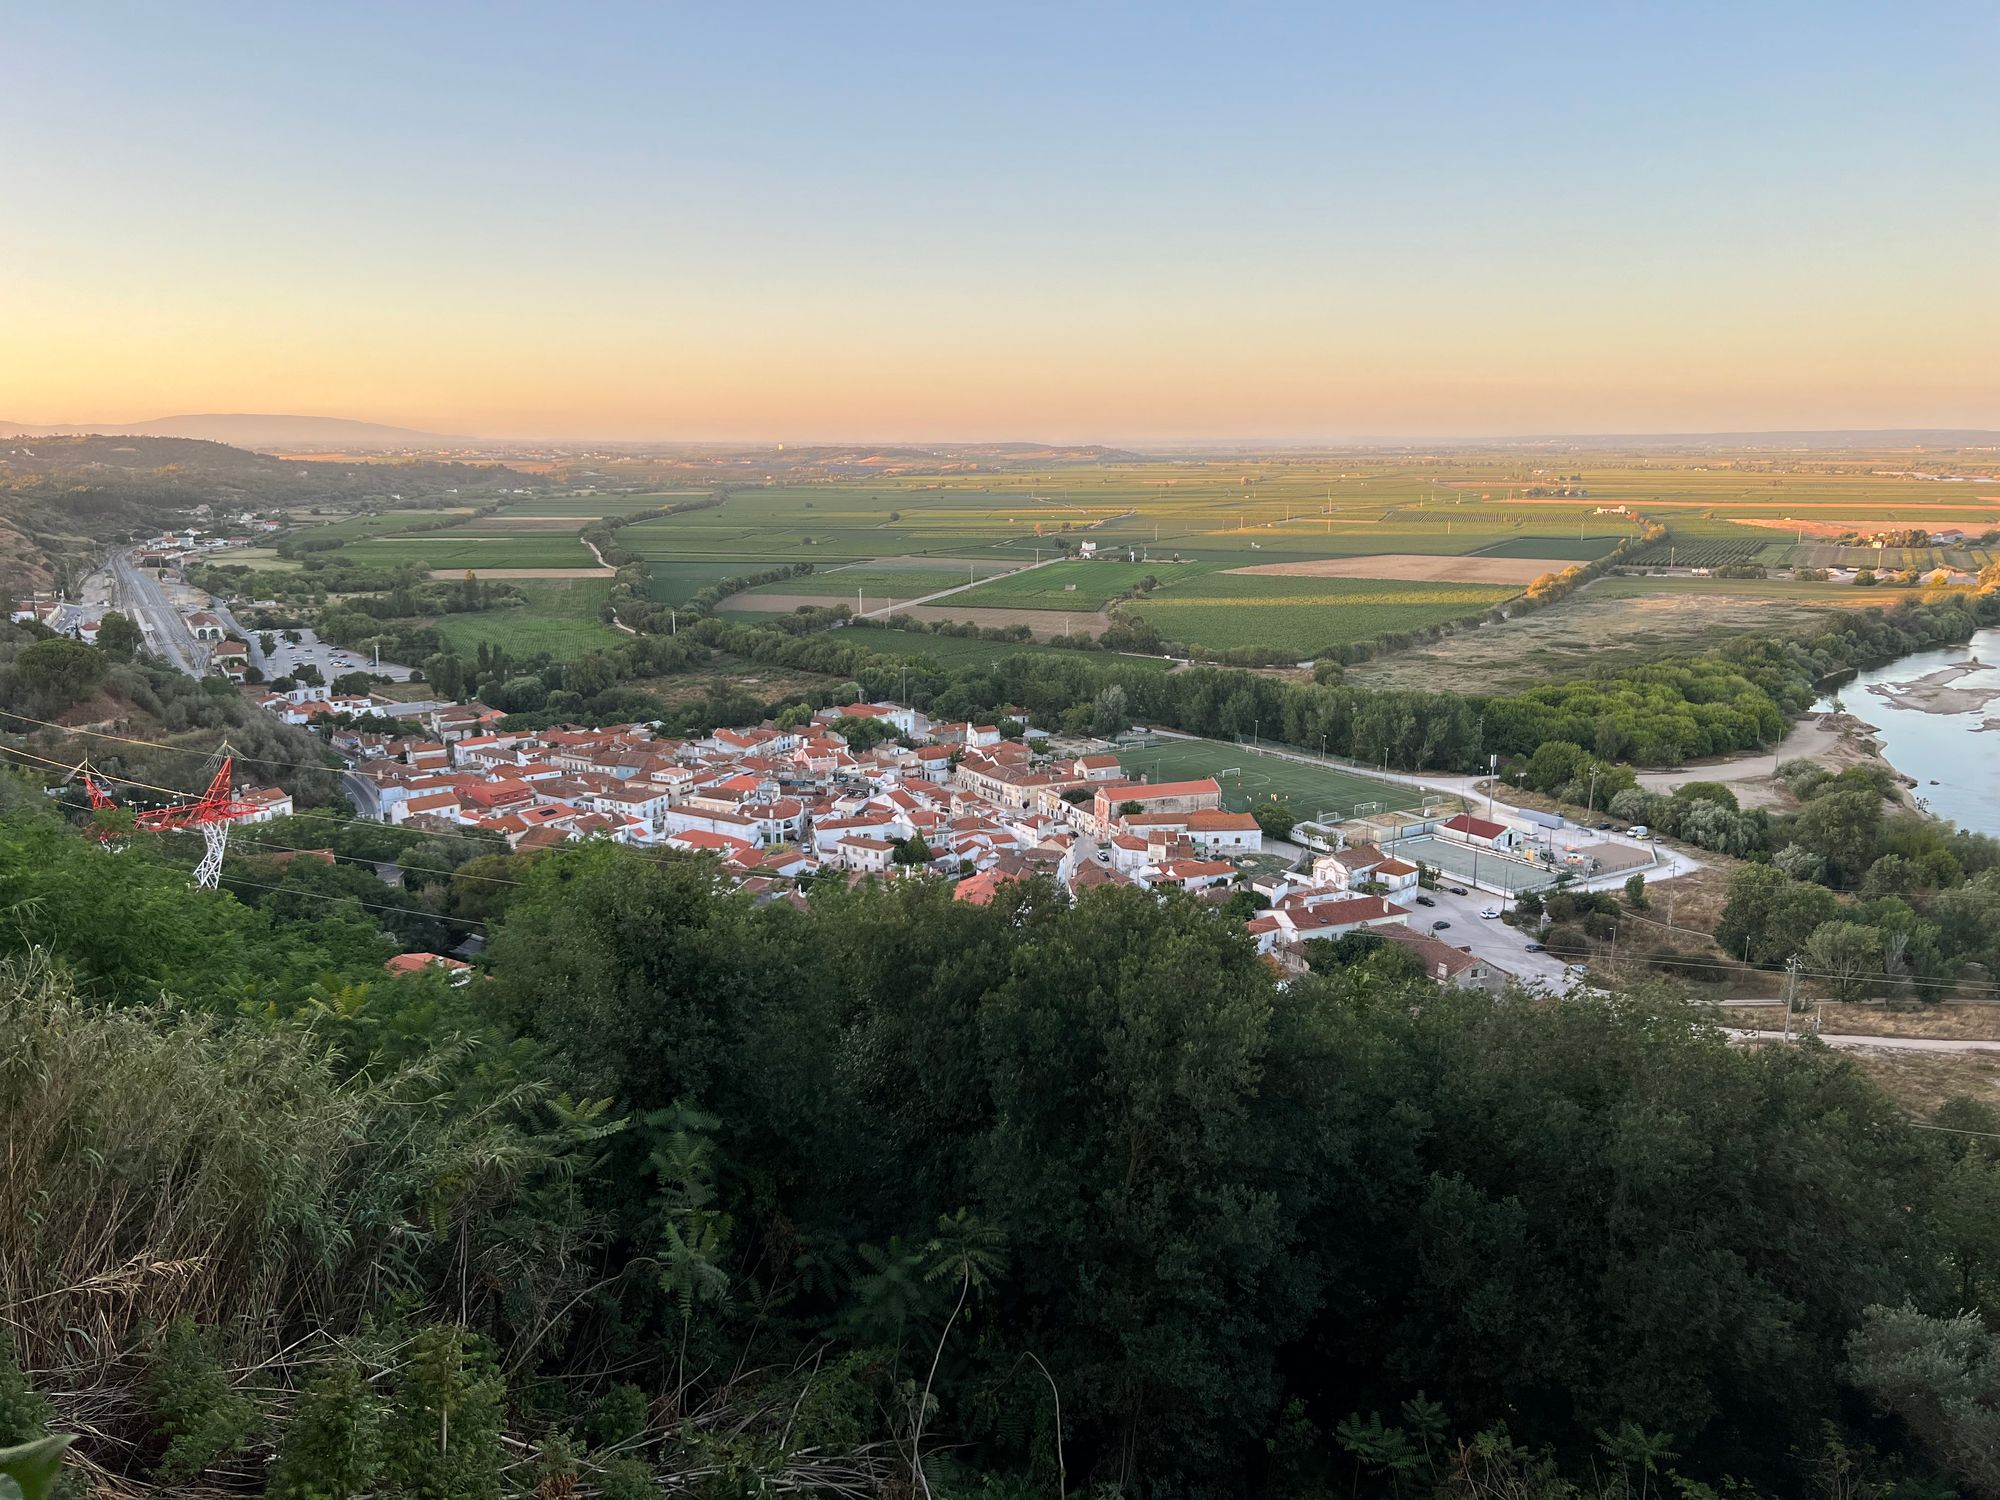 Santarém, Portugal